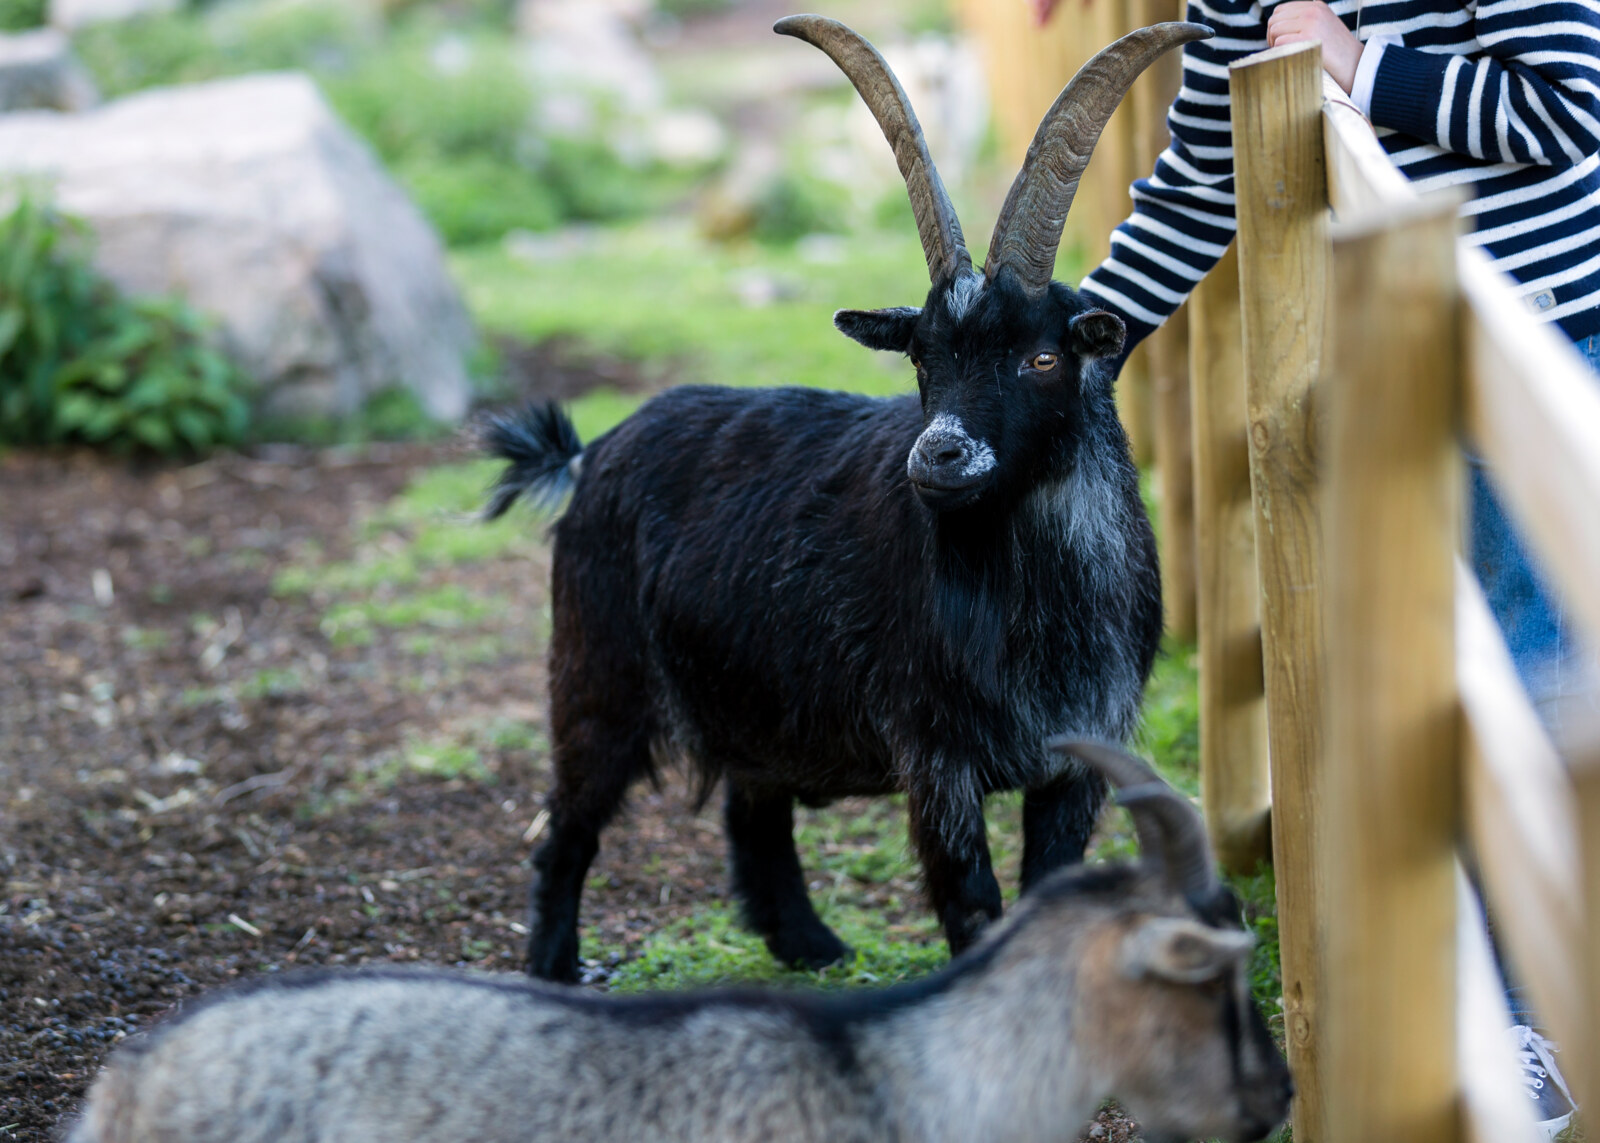 Petting a goat